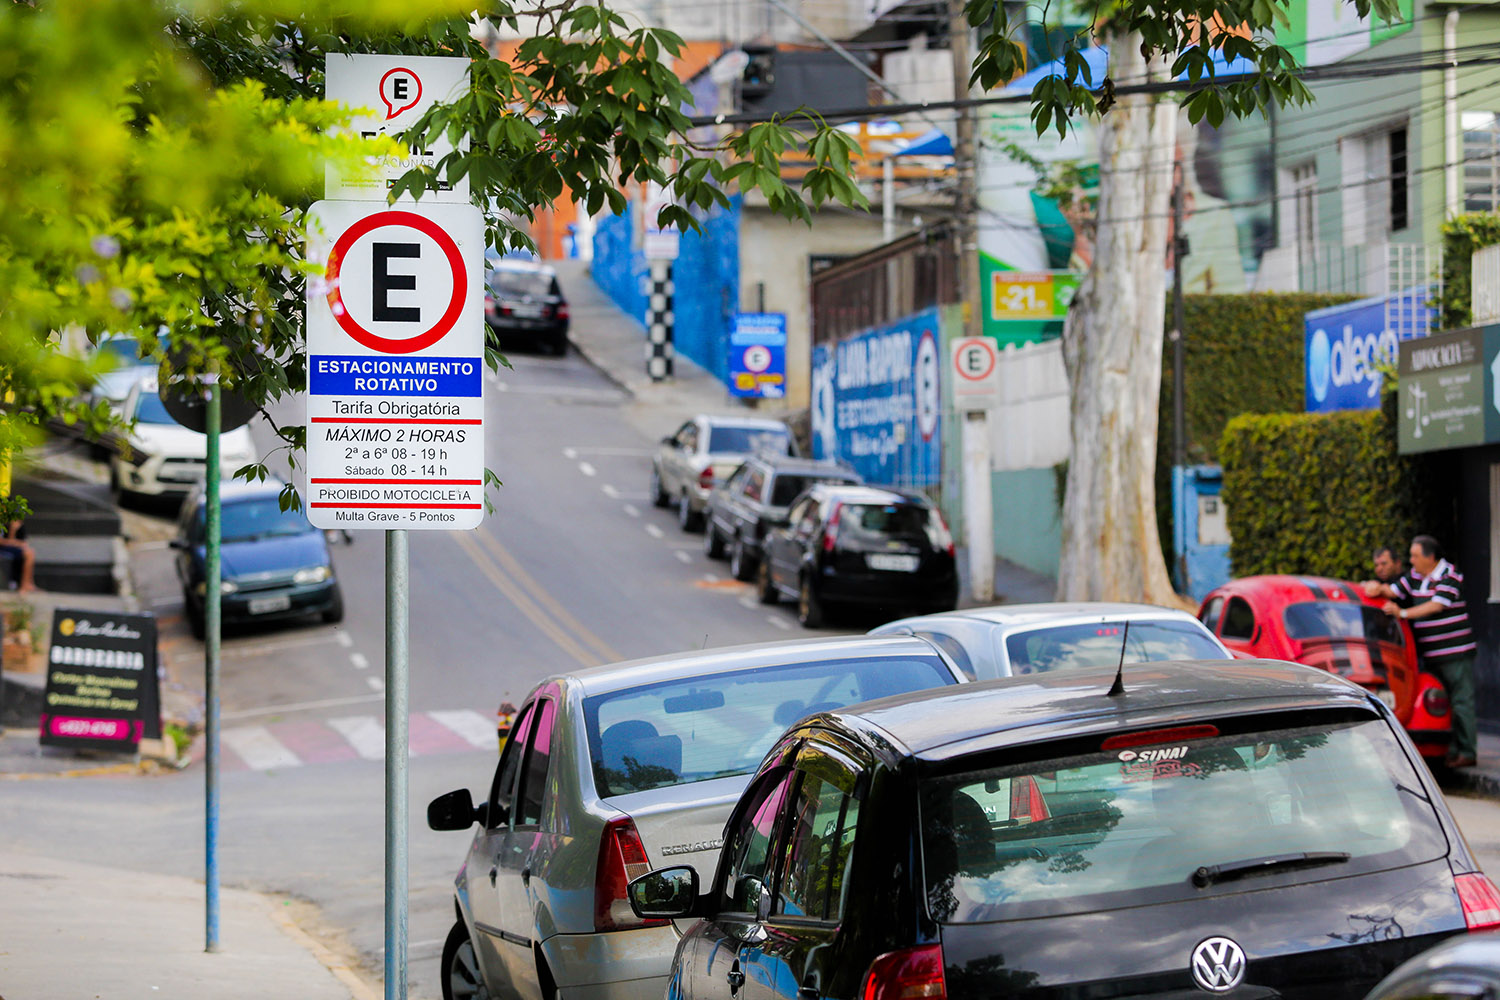 Estacionamento rotativo. Foto: Pedro Godoy/Divulgação